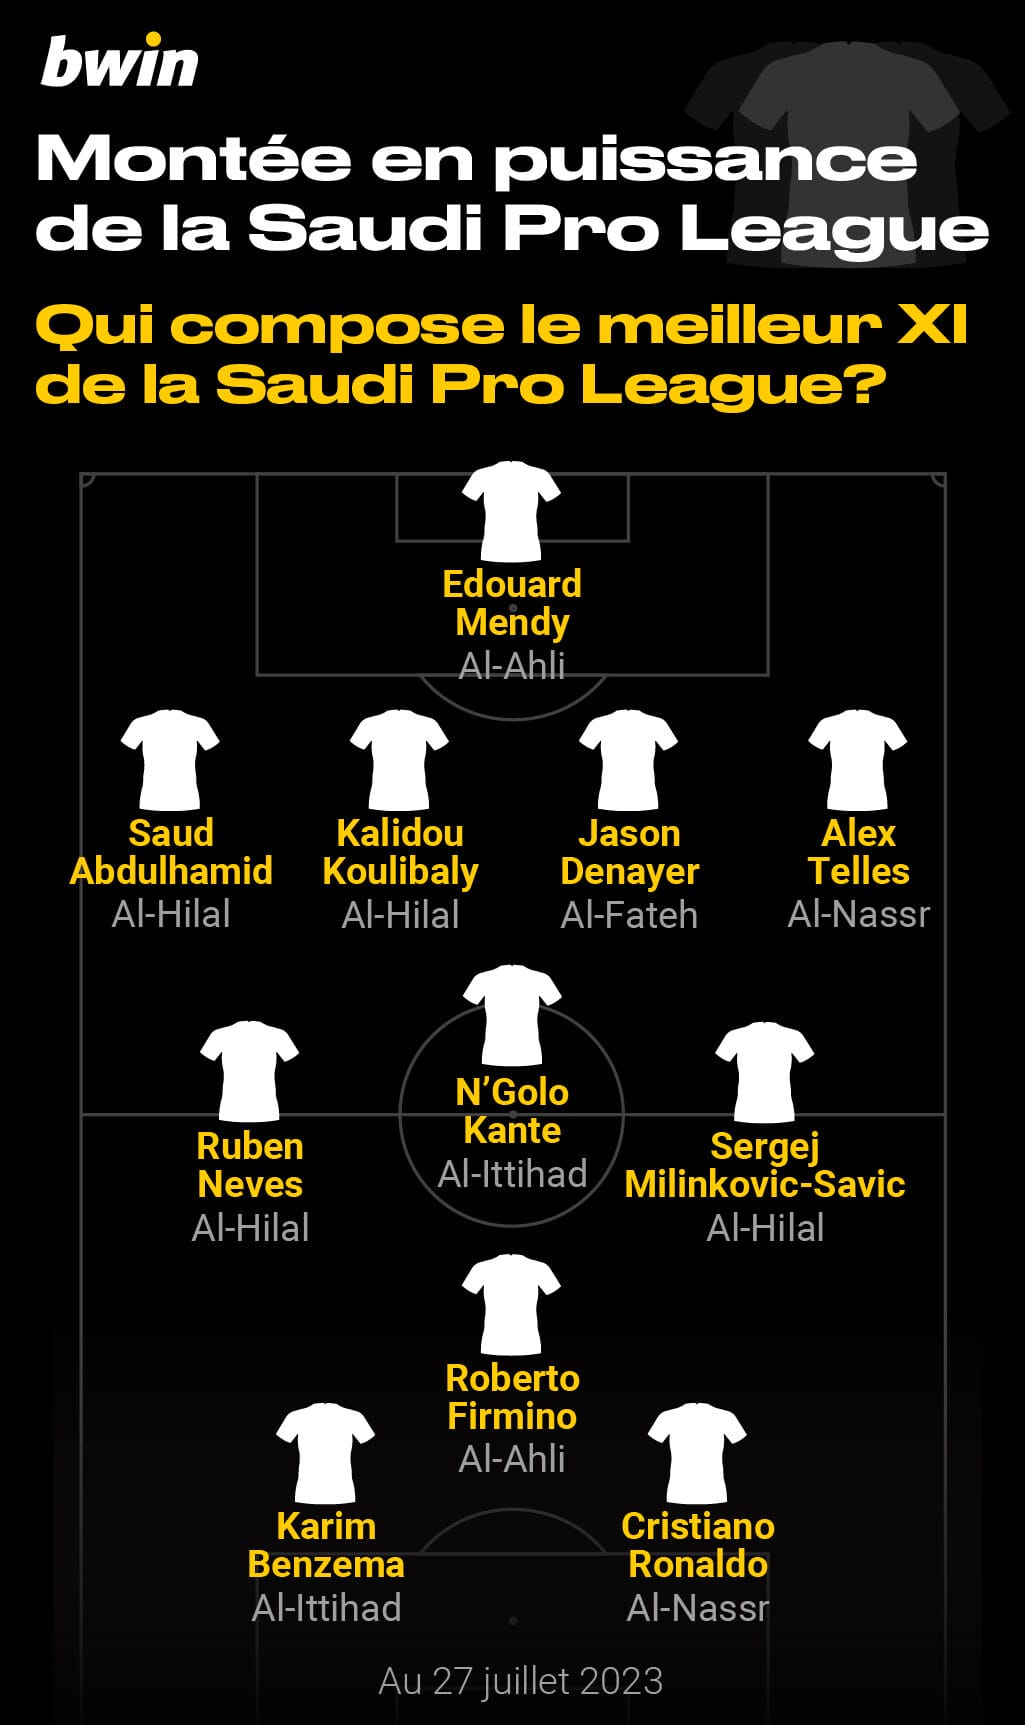 Qui fait partie de la meilleure équipe de la Saudi Pro League